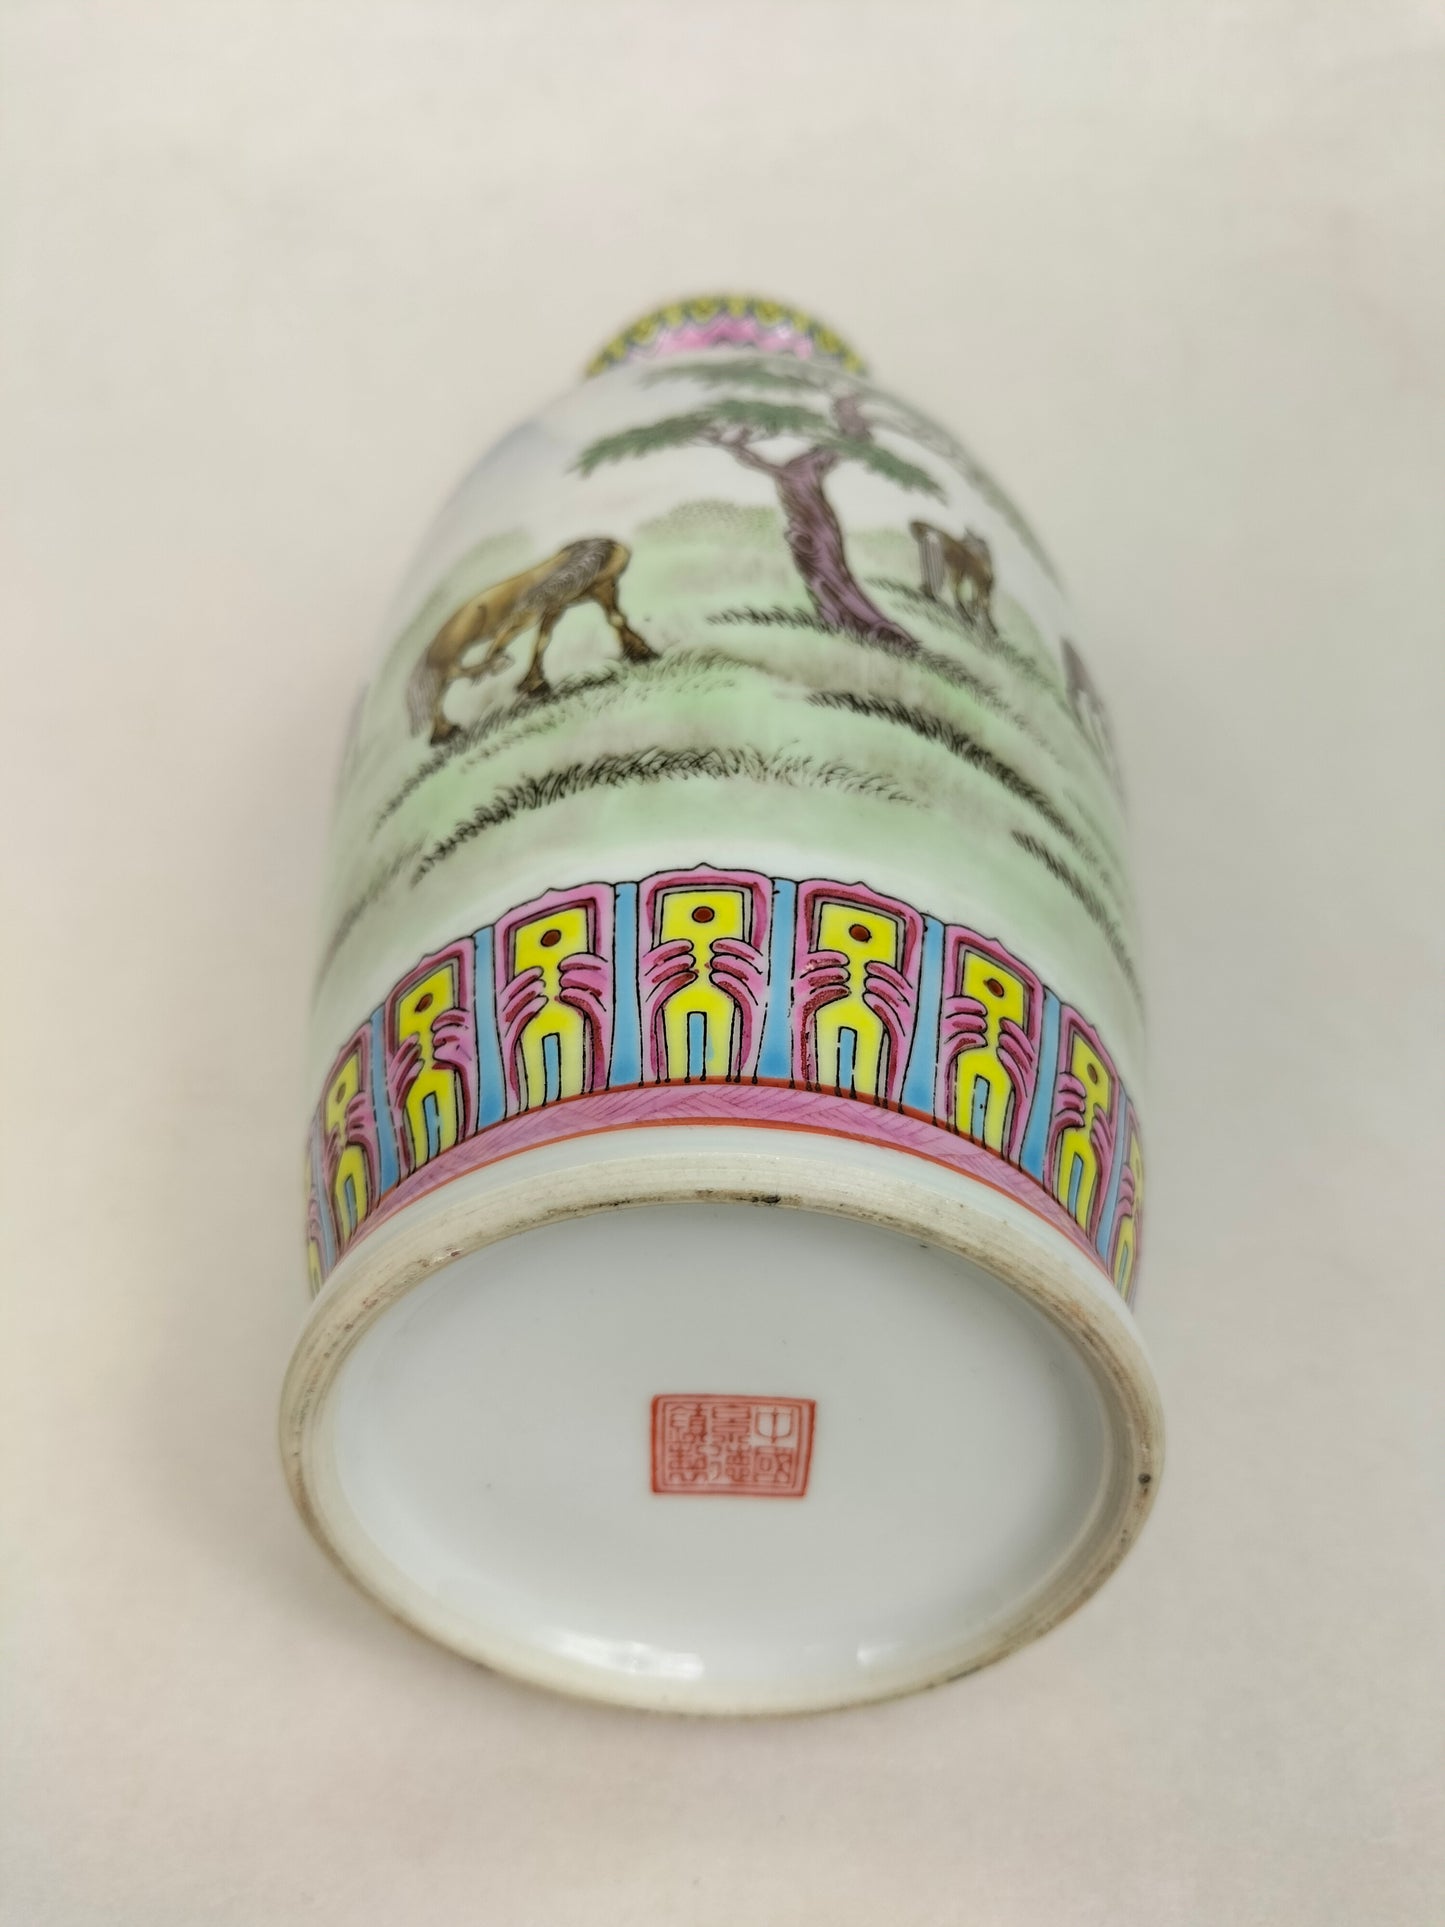 中国粉彩山水马花瓶 // 景德镇 - 20 世纪